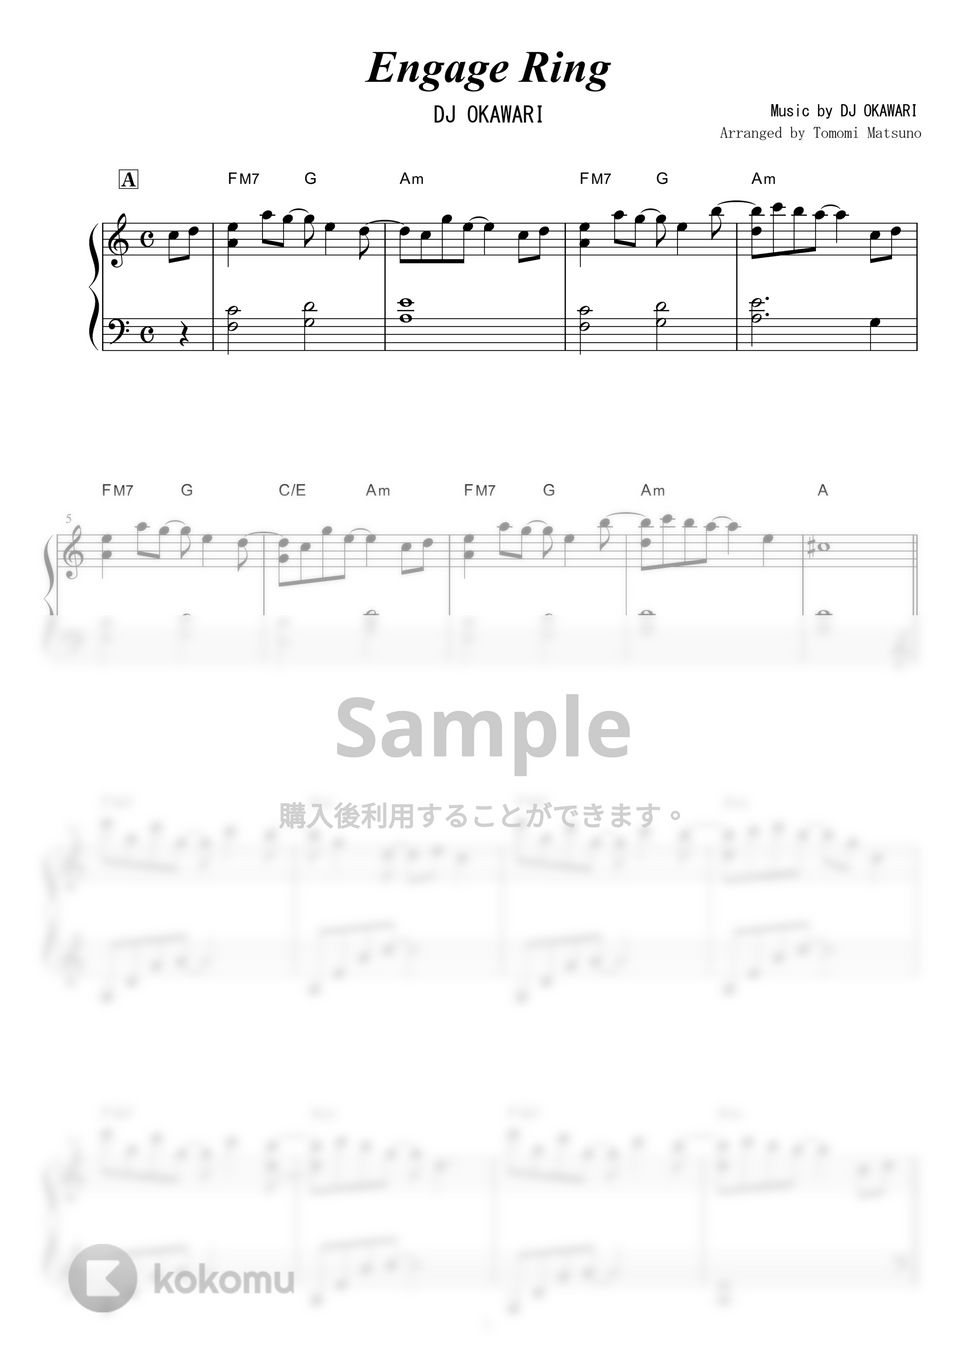 DJ OKAWARI - Engage Ring by piano*score